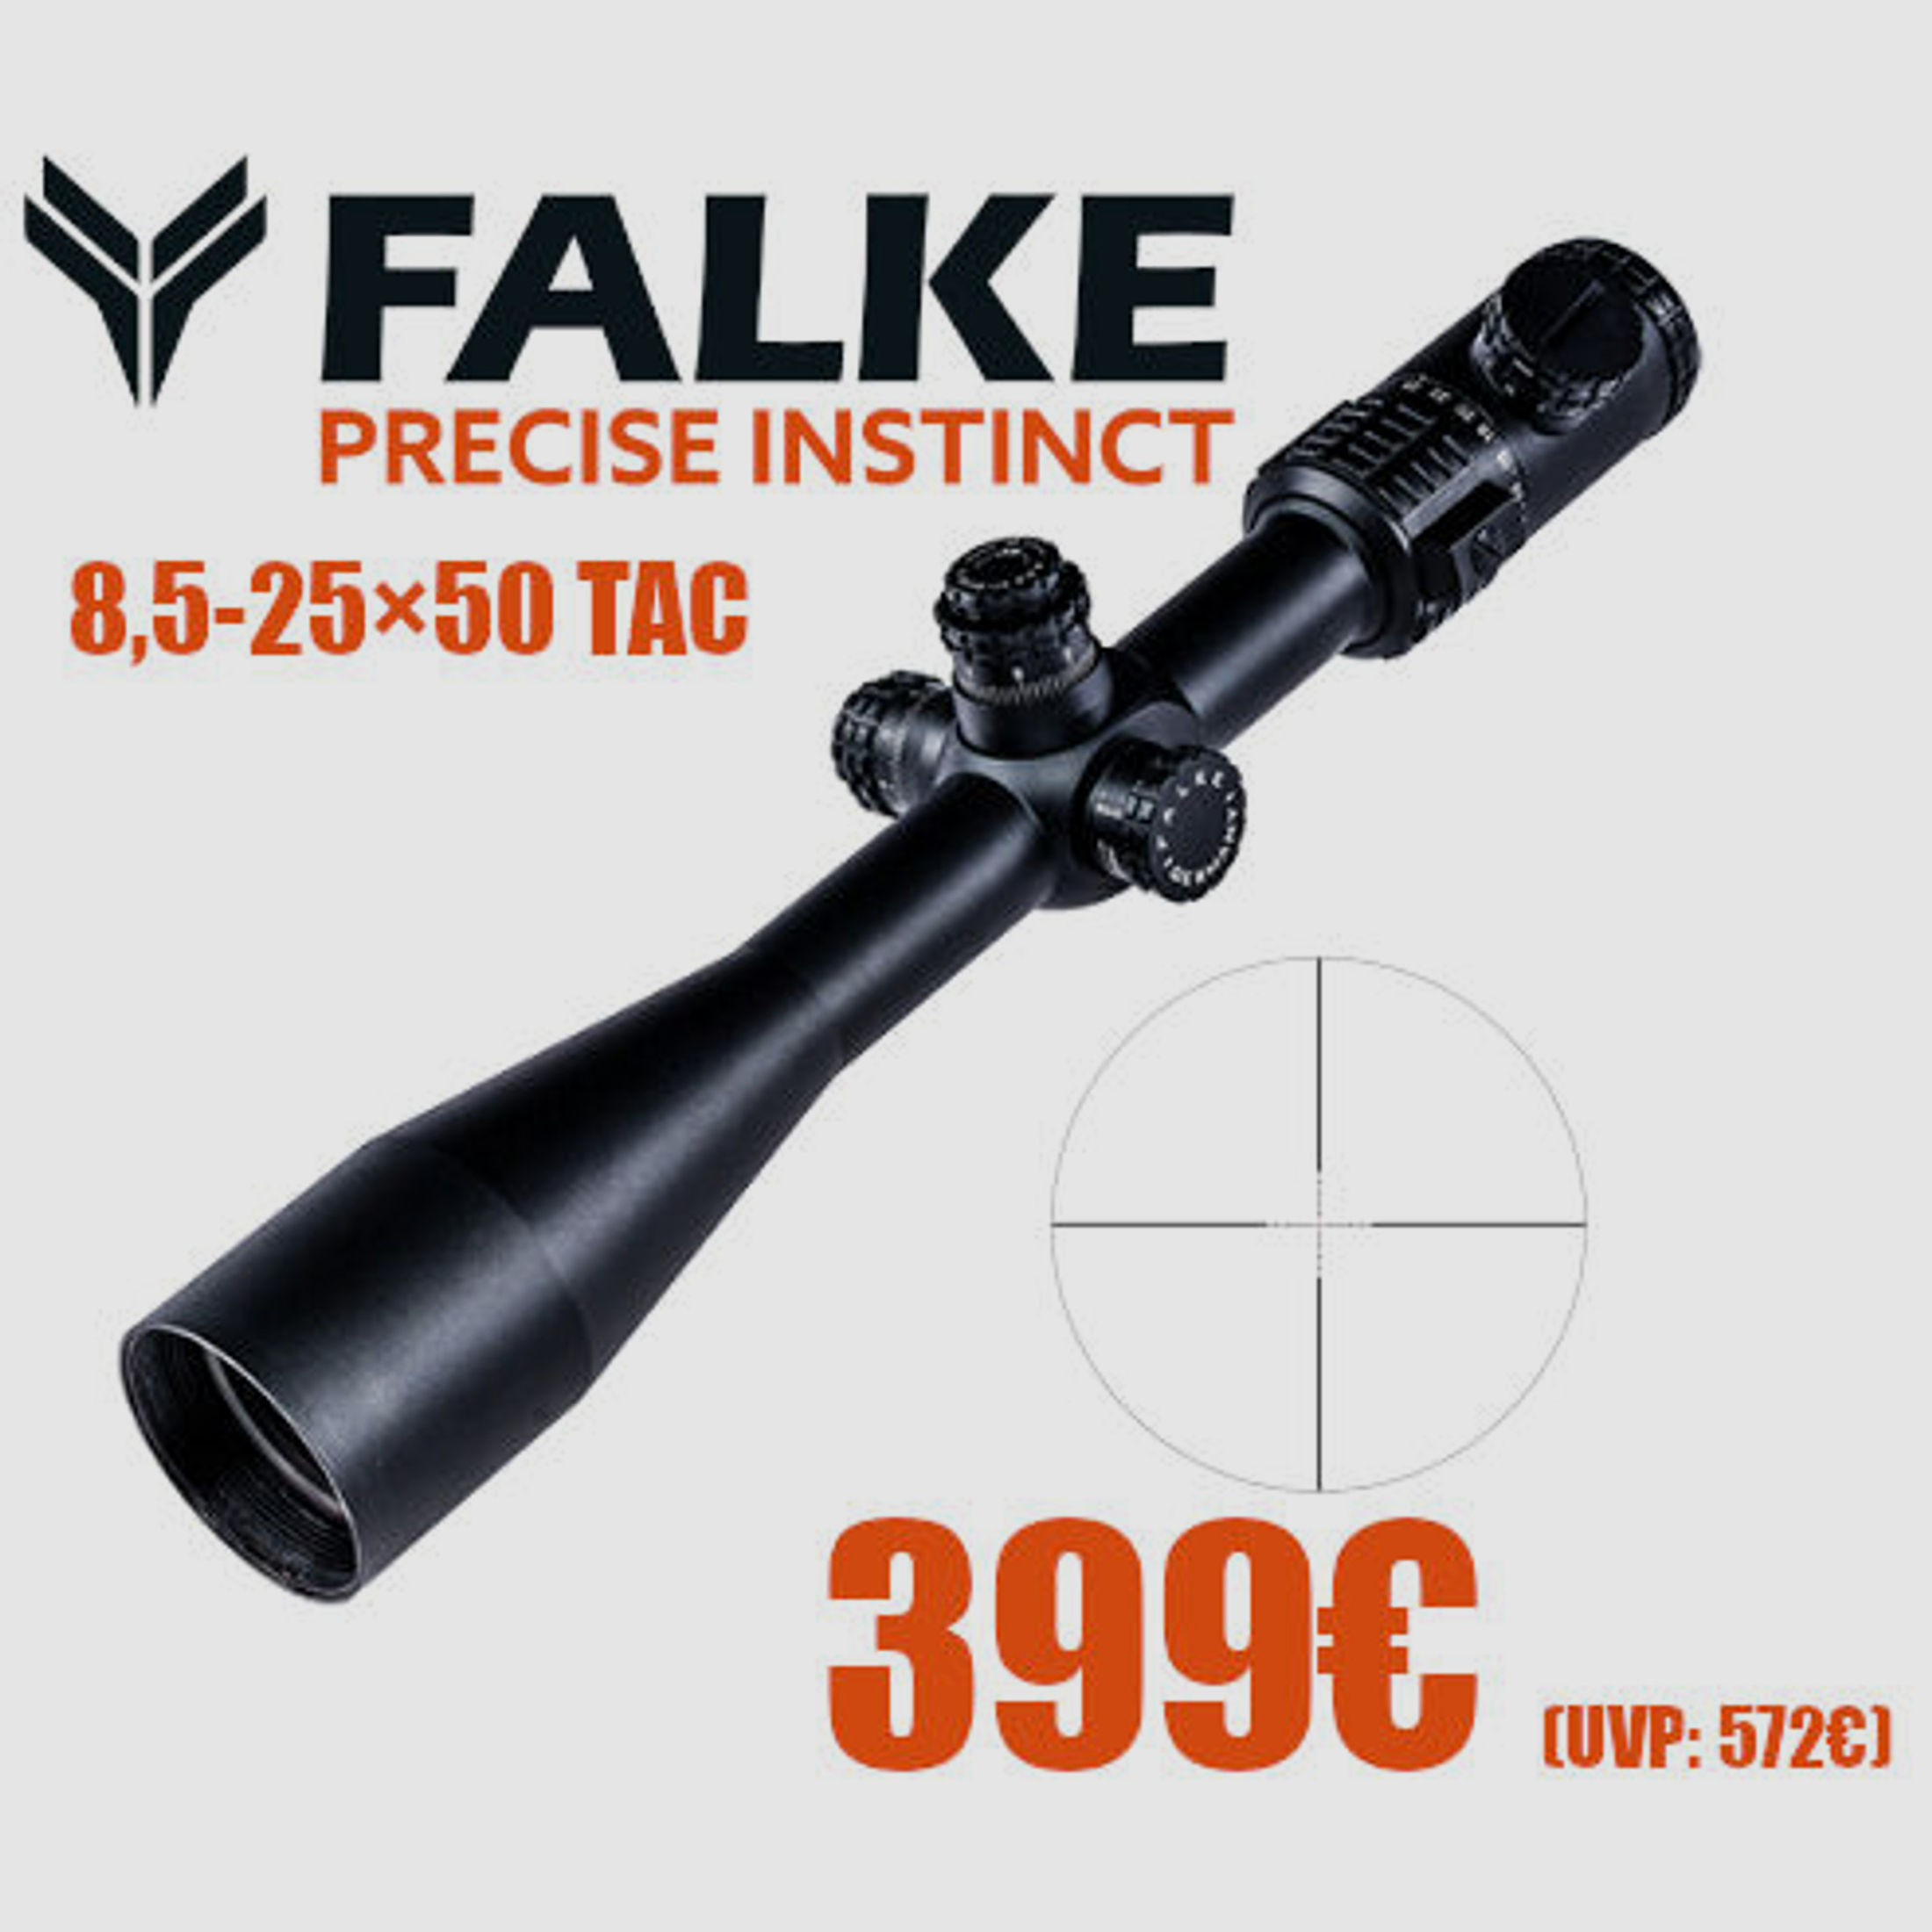 FALKE 8,5-25×50 Tac Zielfernrohr Ideal für Distanzen bis 300m	 UVP: 572€